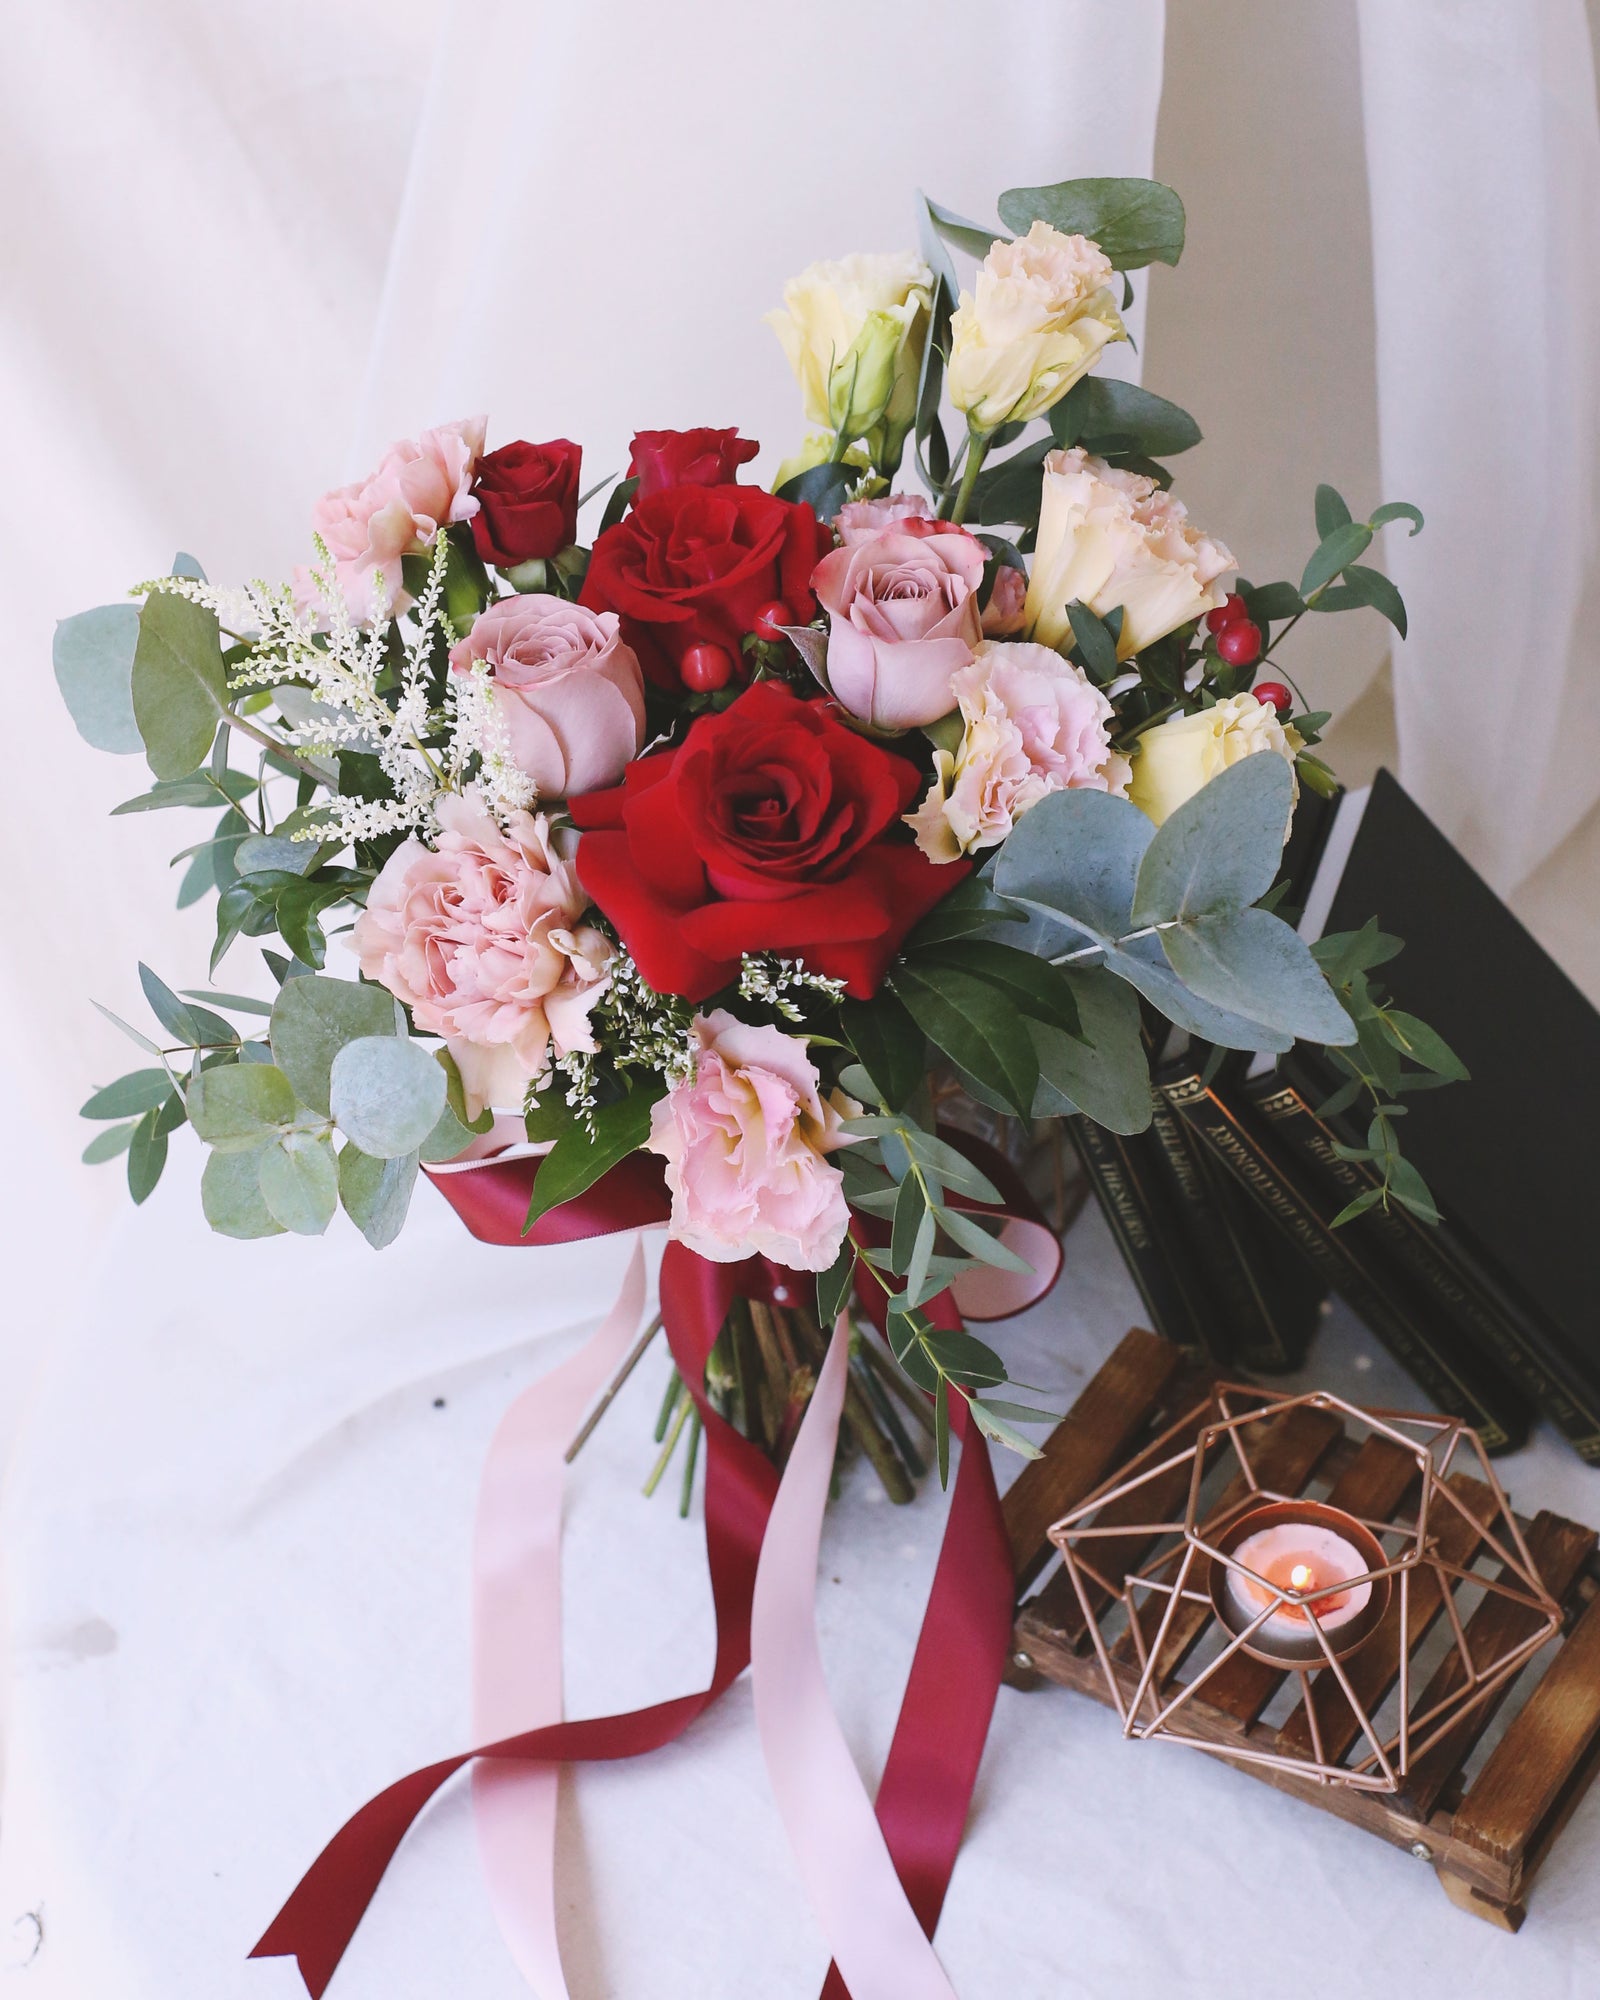 Birthday Cotton velvet Wedding Gift Artifical Valentine's Day Flowers  Bouquet | eBay